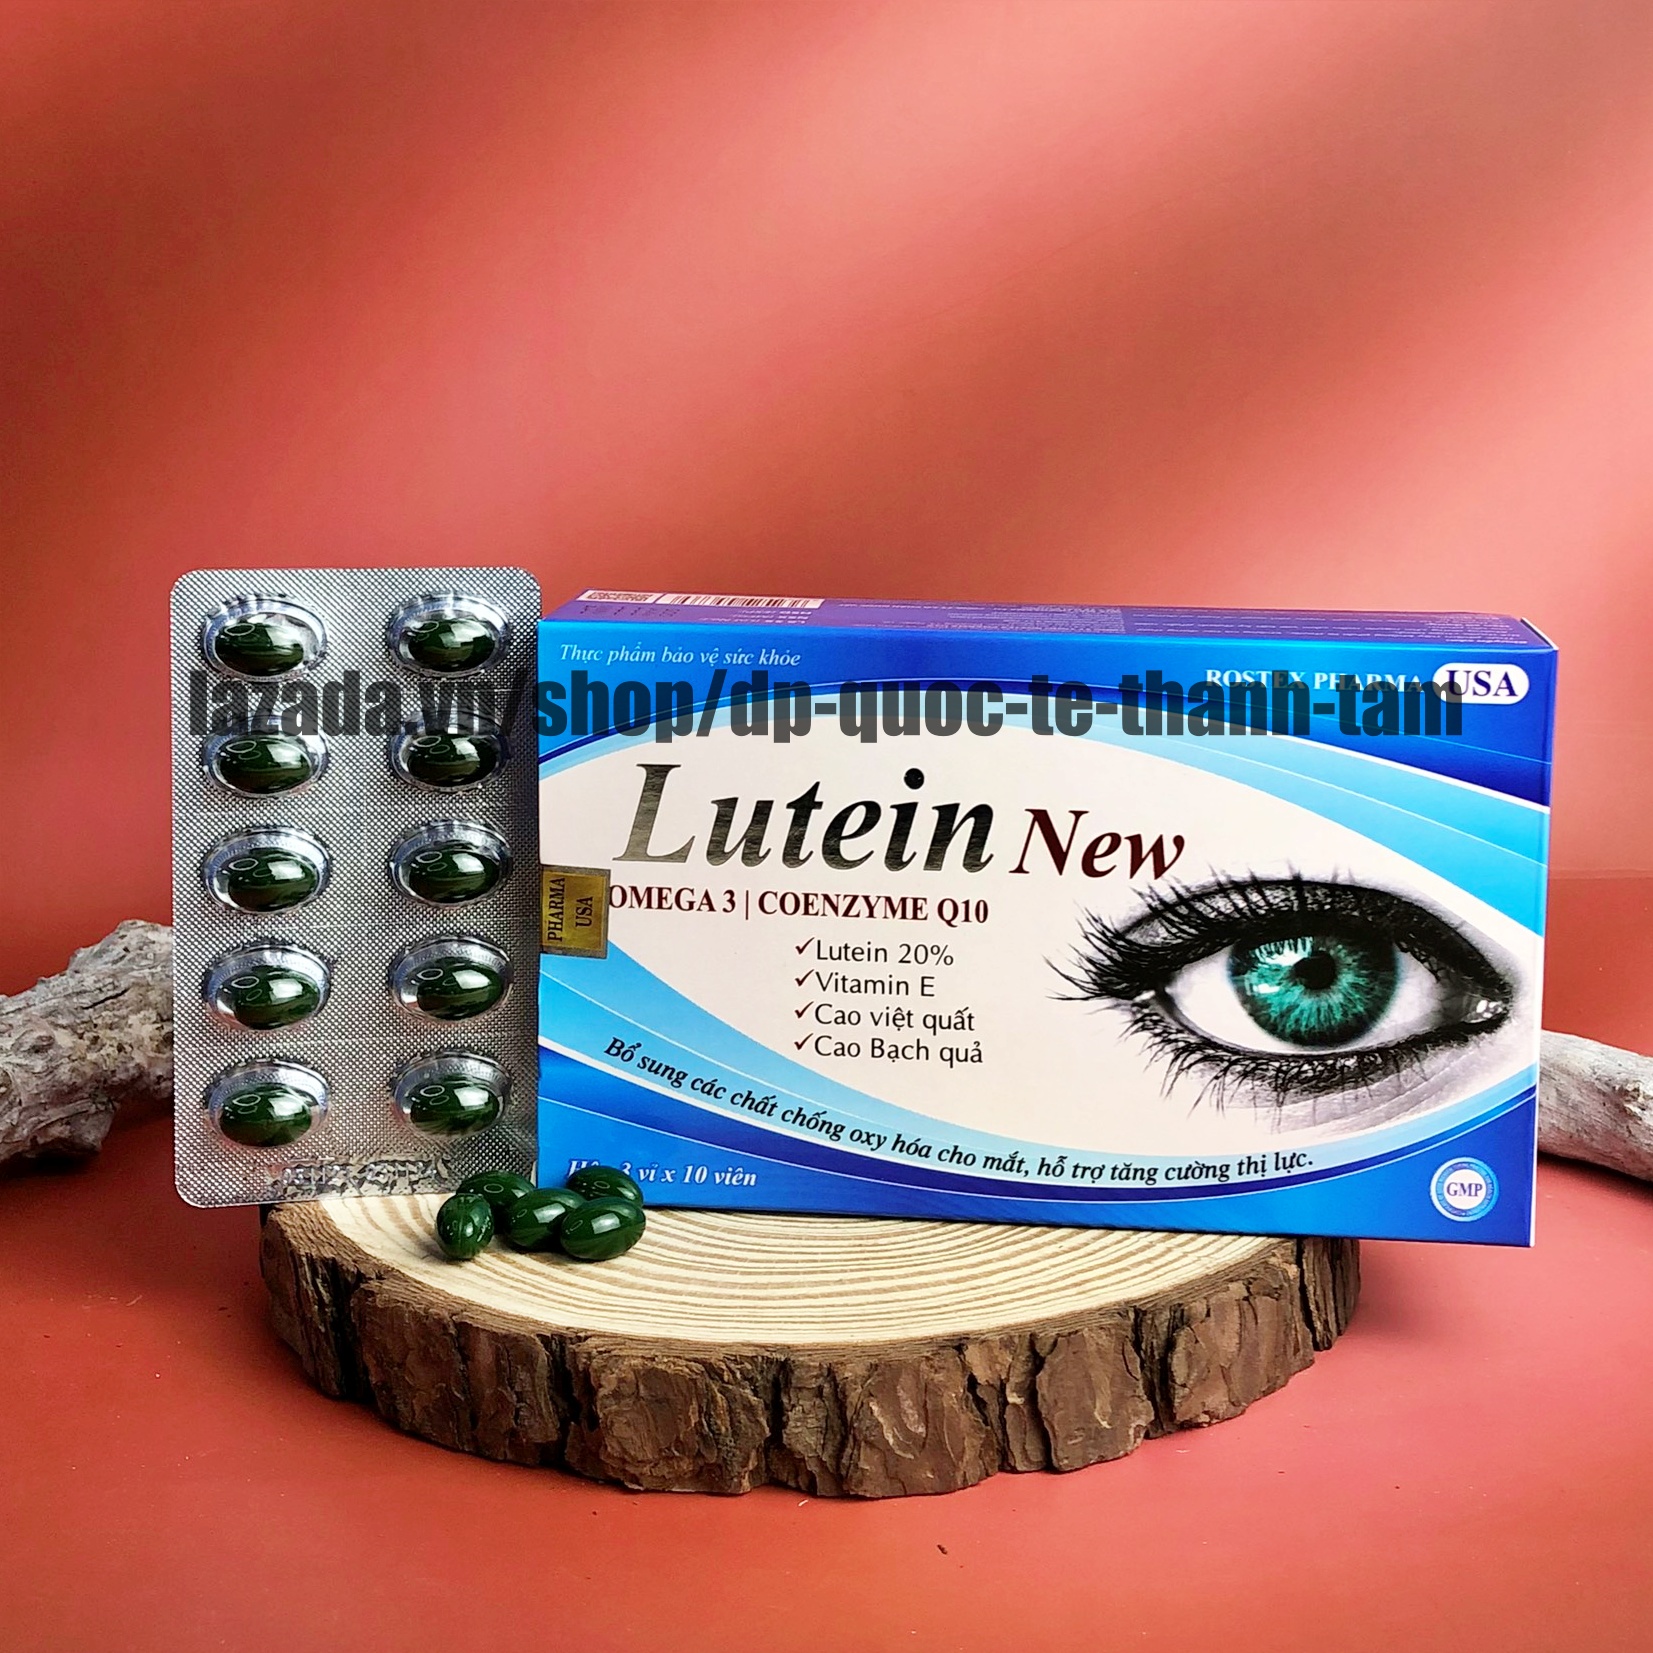 Viên uống bổ mắt Lutein New bổ sung omega 3 giúp mắt sáng, khoẻ